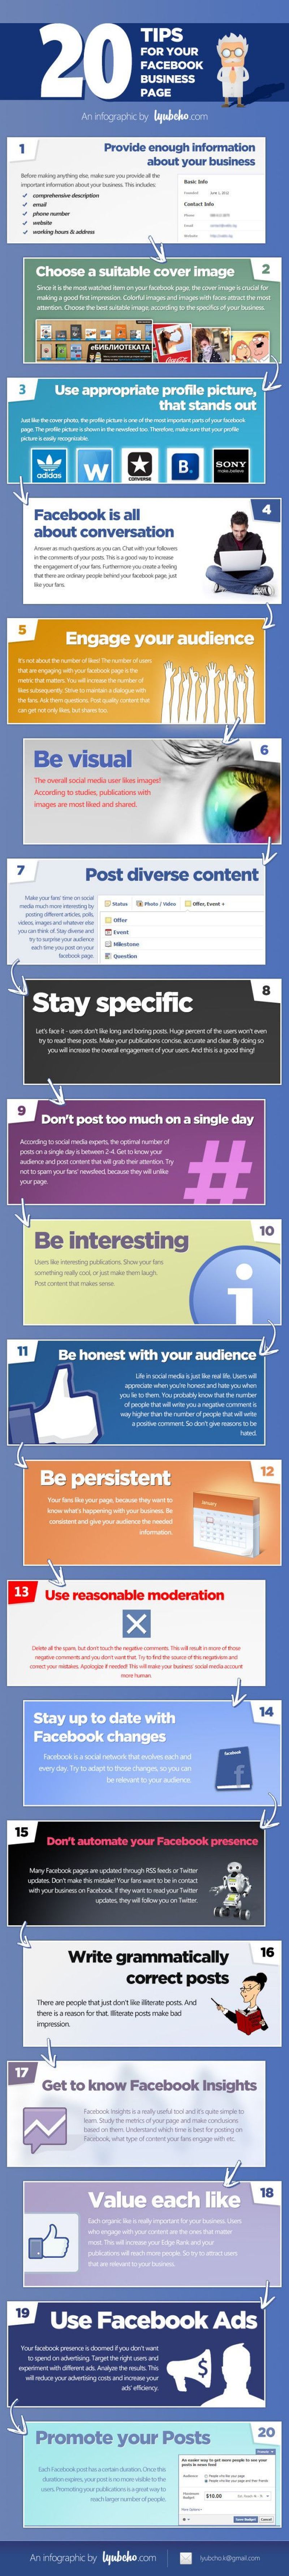 20 trucos para sacar más provecho a tu página de Facebook (infografía)